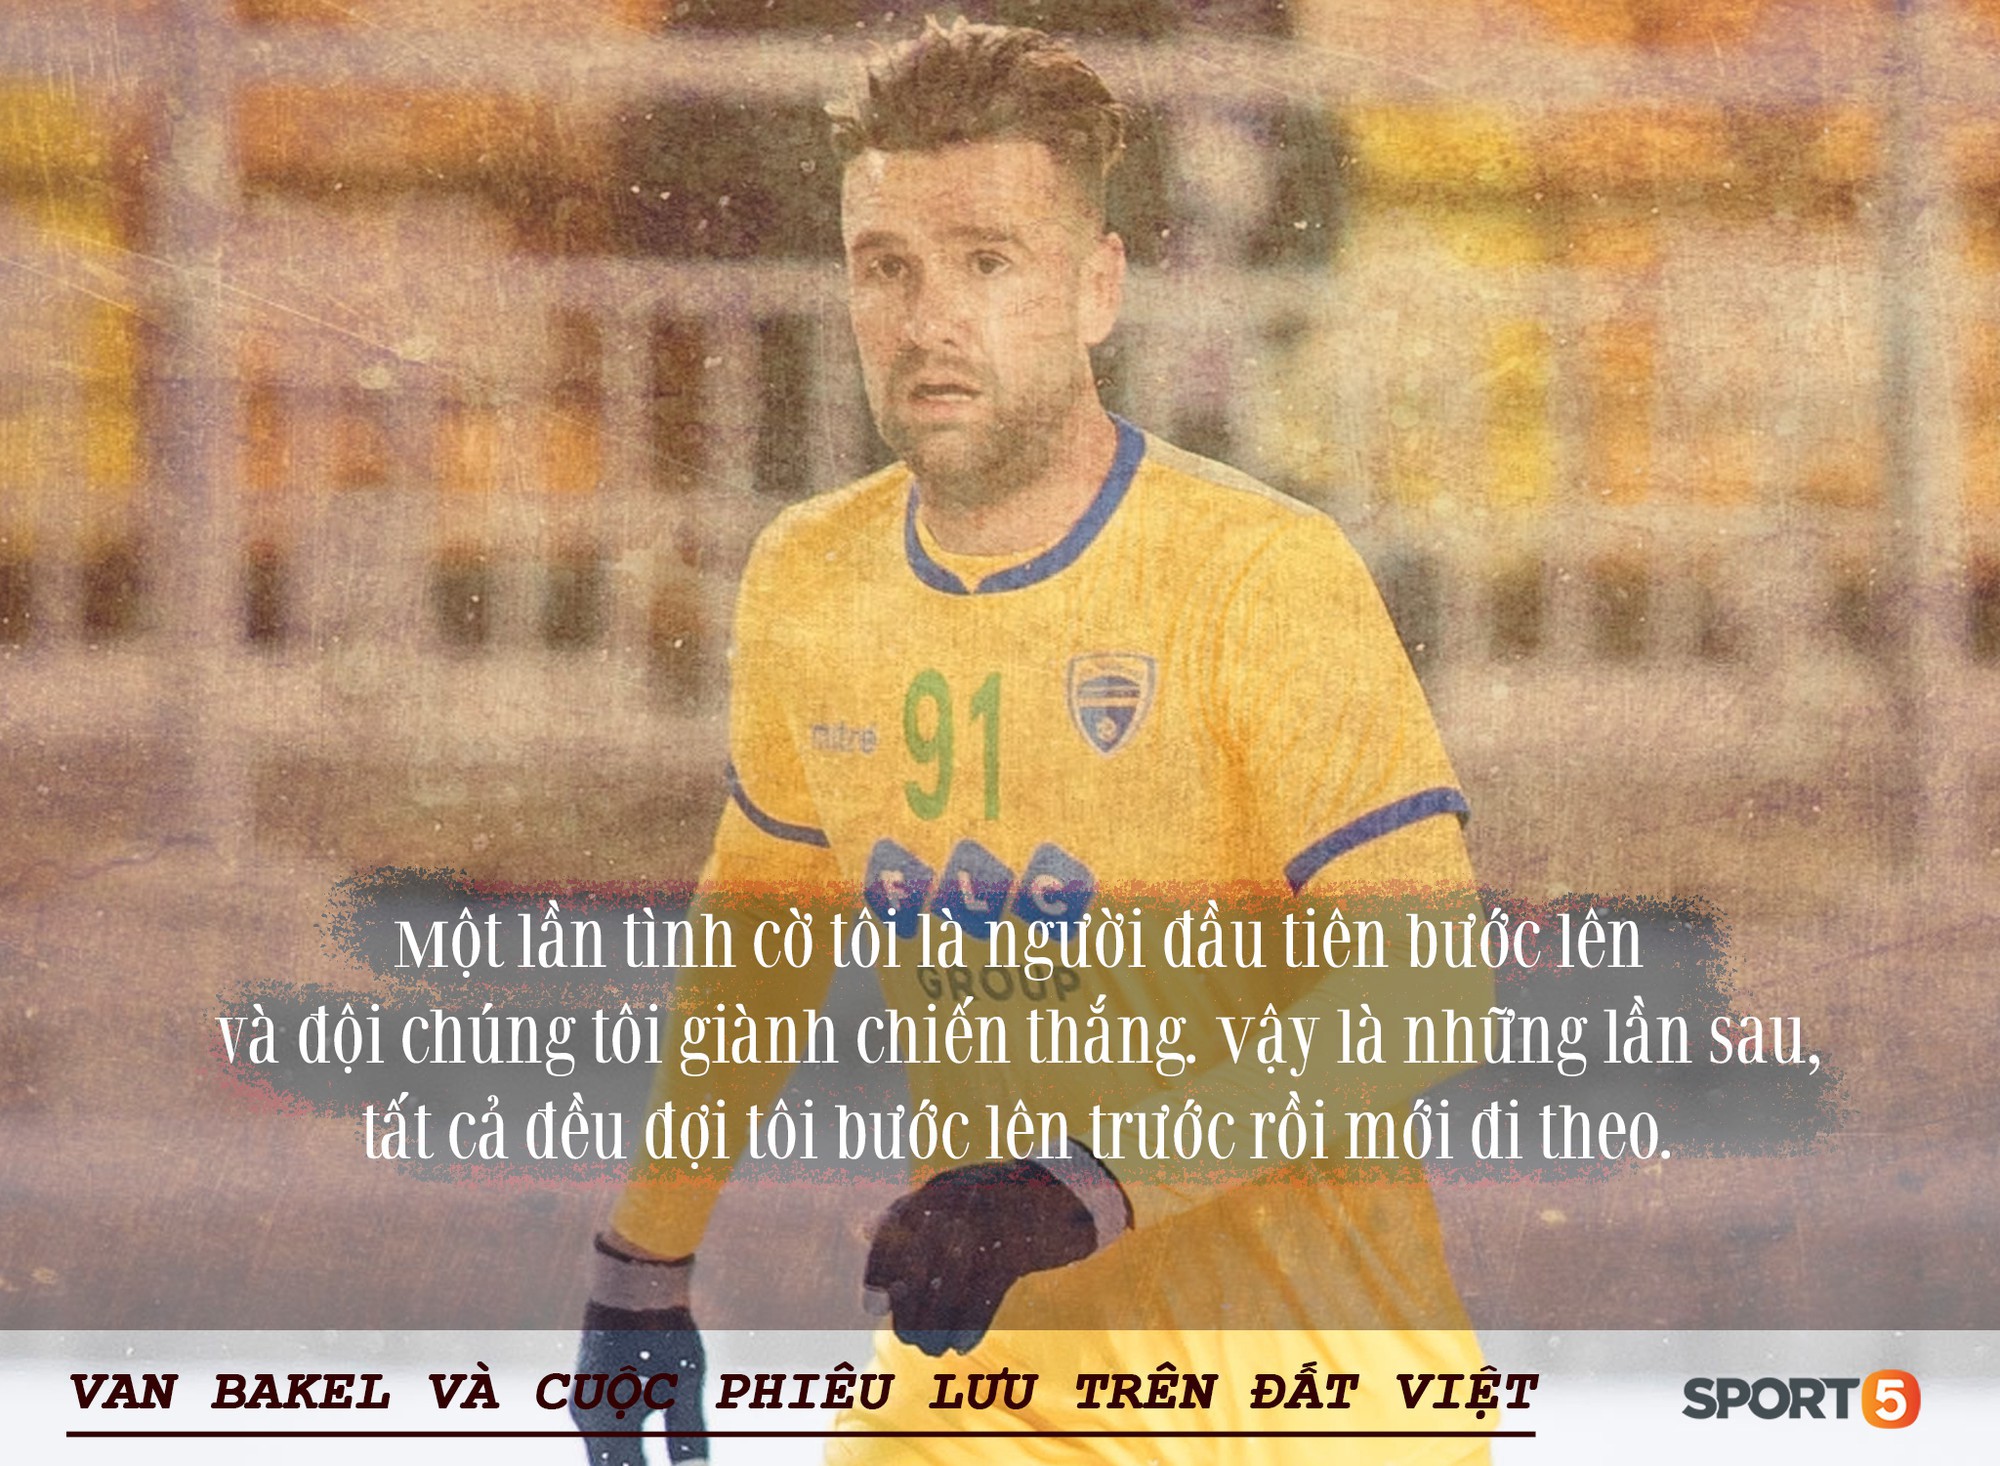 Bóng đá Việt qua mắt cầu thủ ngoại (kỳ 2): “Để tồn tại, tôi phải nói dối đã khoác áo PSV và đánh bại những người uống máu rắn” - Ảnh 3.